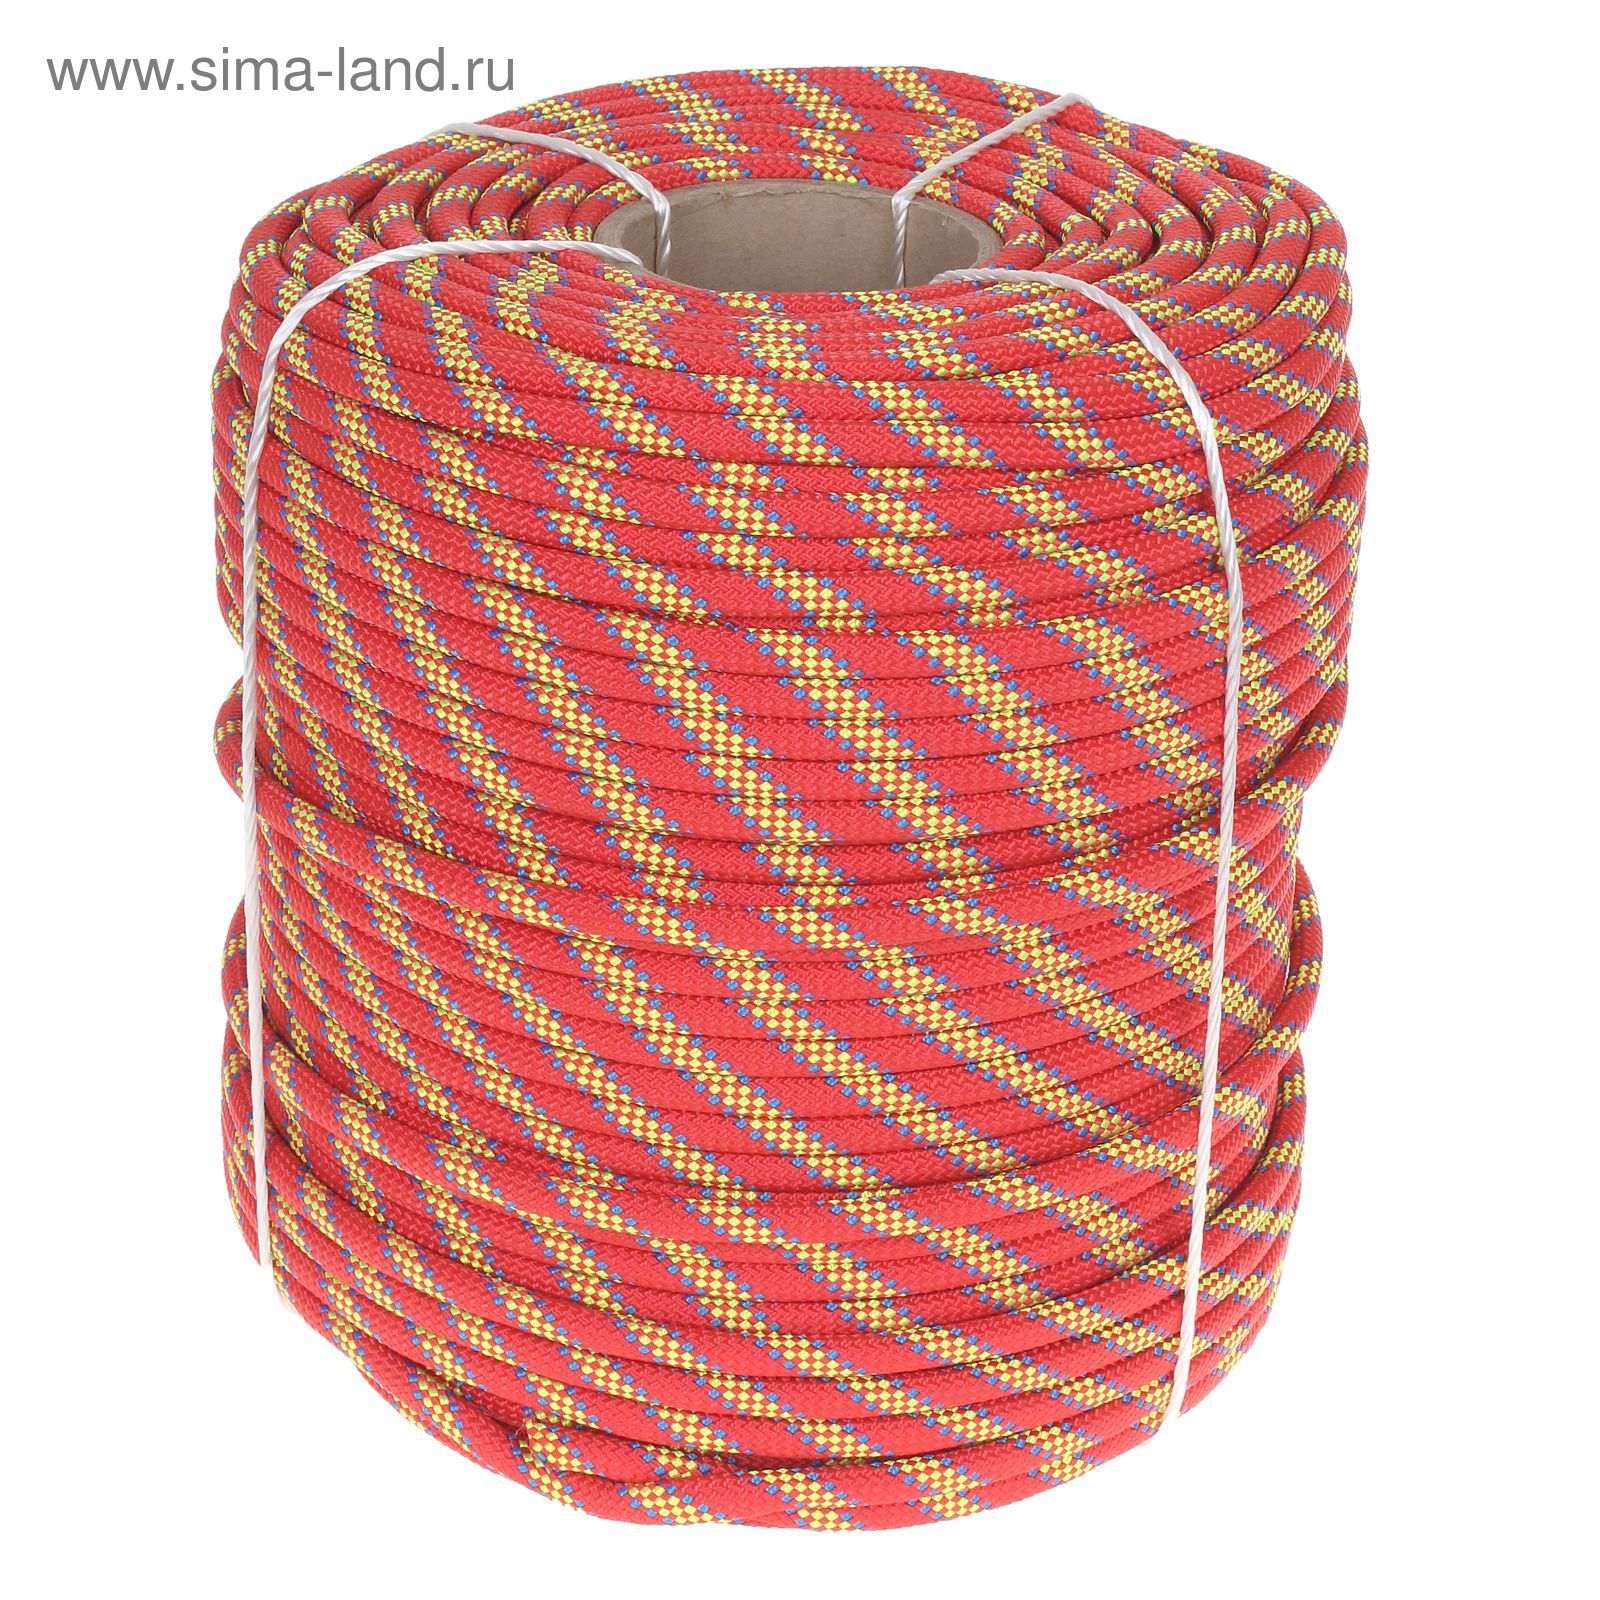 Веревка Дзержинск Веста, диаметр 10 мм (200 м), цвет МИКС